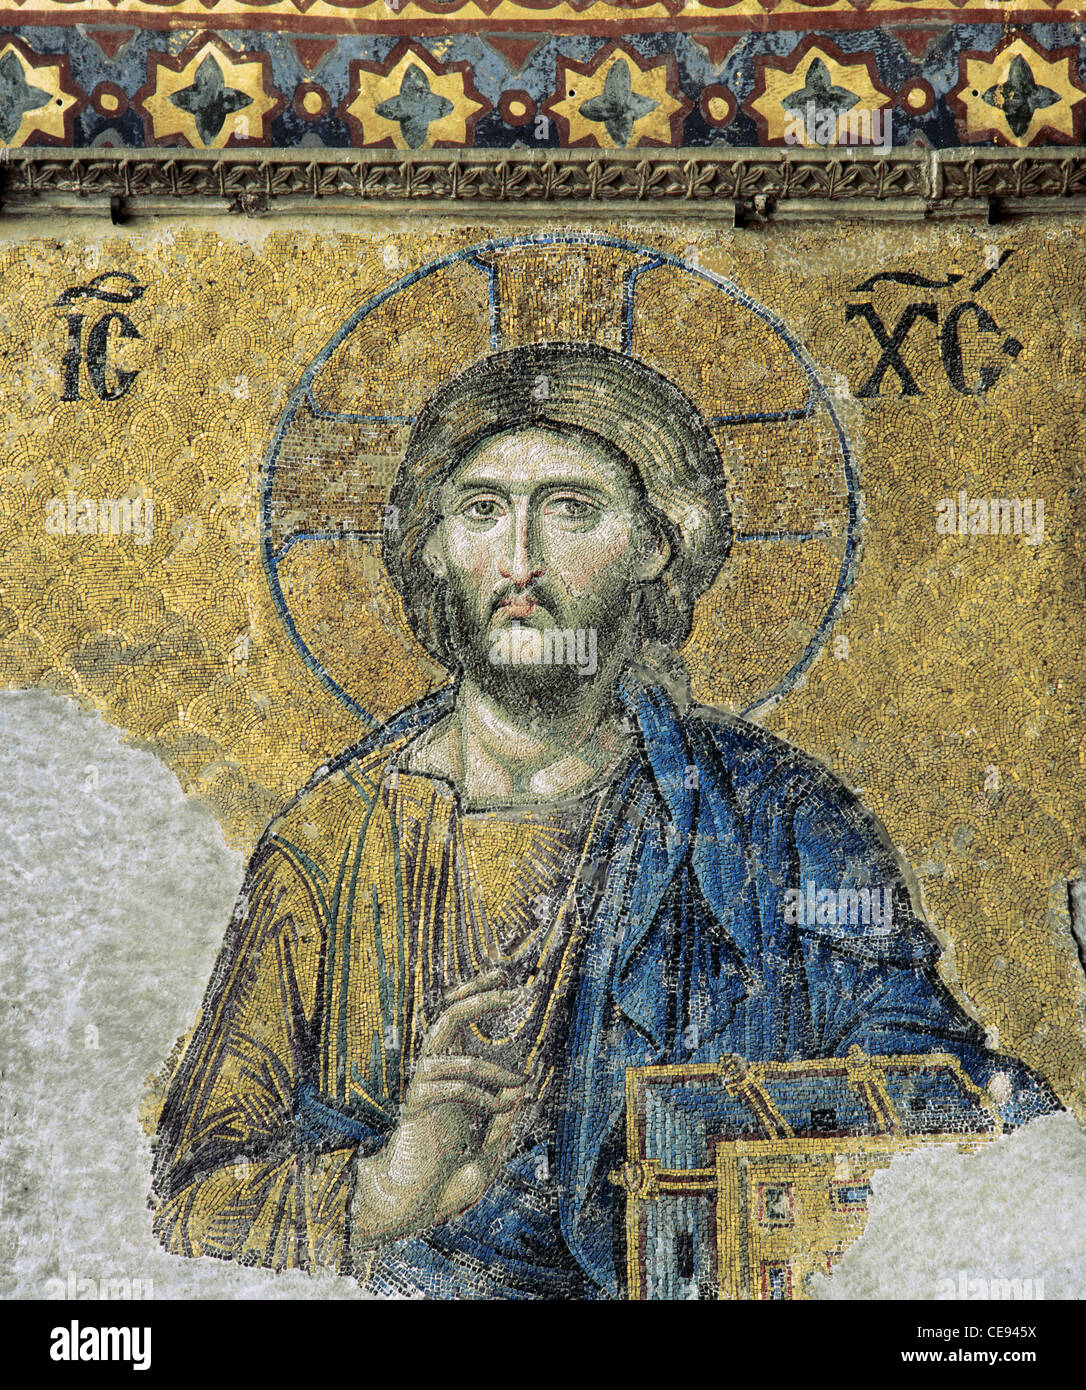 Die Deesis. Detail. Jesus Christ in der Majestät als ob Sie segnen. 13. Jahrhundert. Mosaik. Hagia Sophia. Istanbul. Turkei. Stockfoto